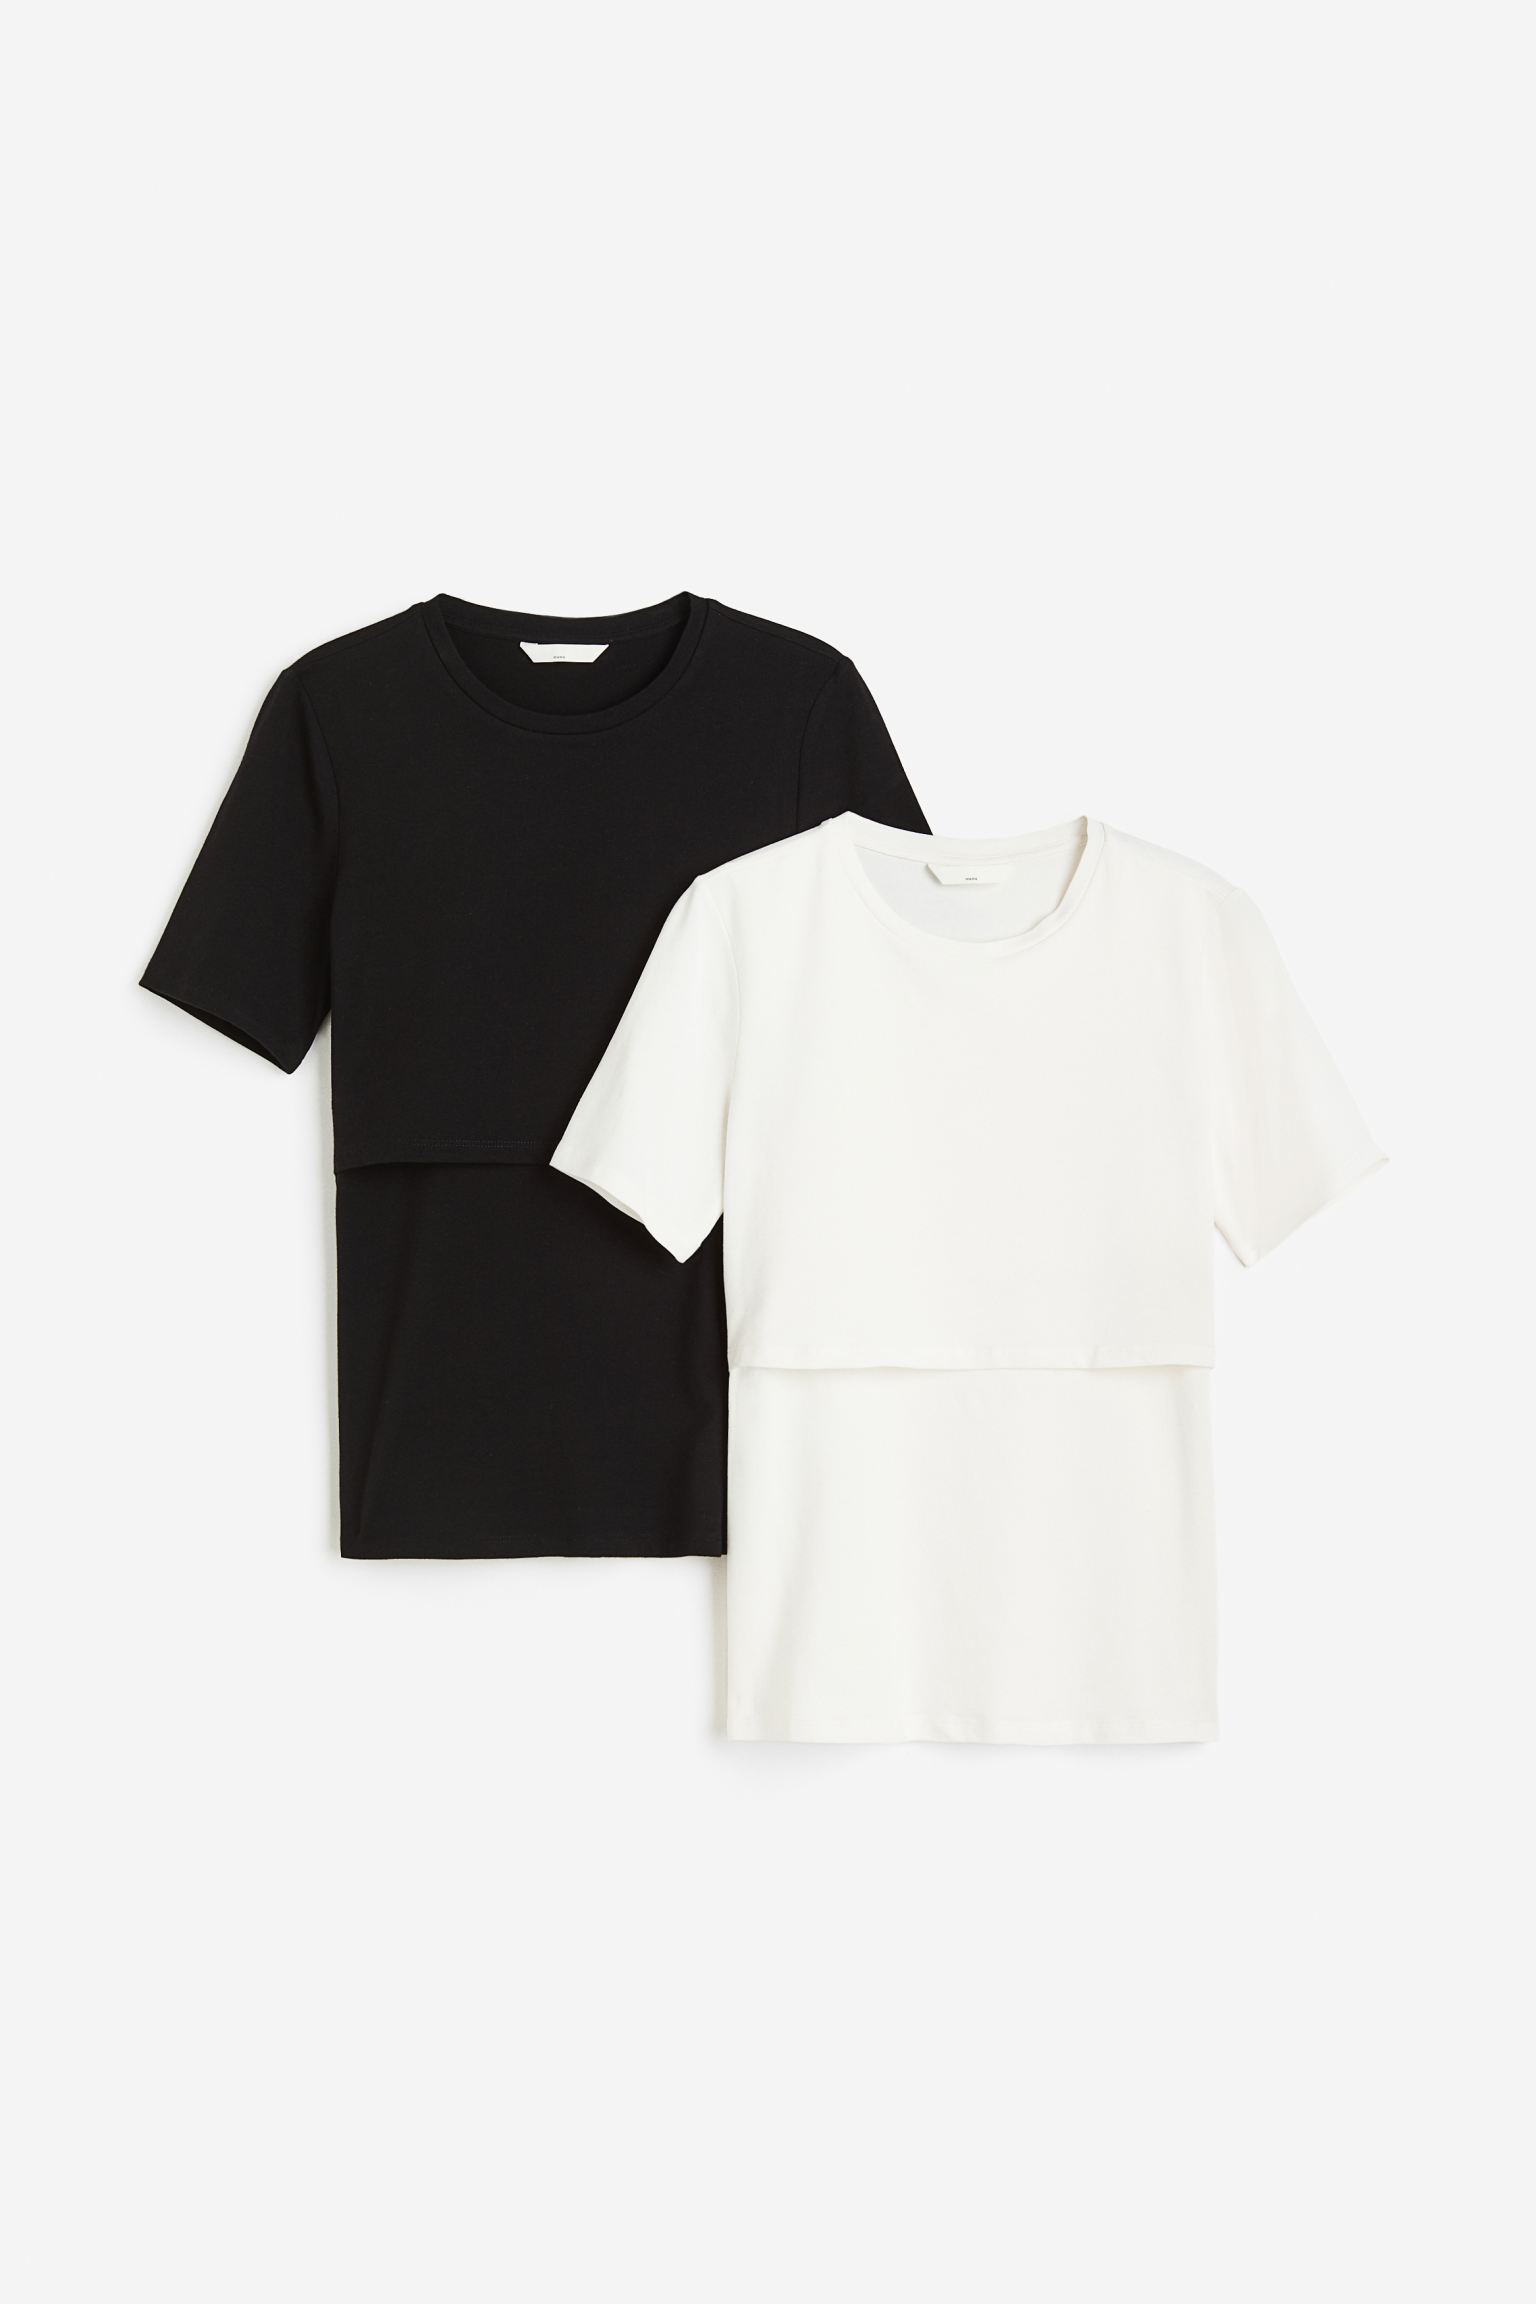 Комплект футболок женских H&M 1175052002 черных L (доставка из-за рубежа)